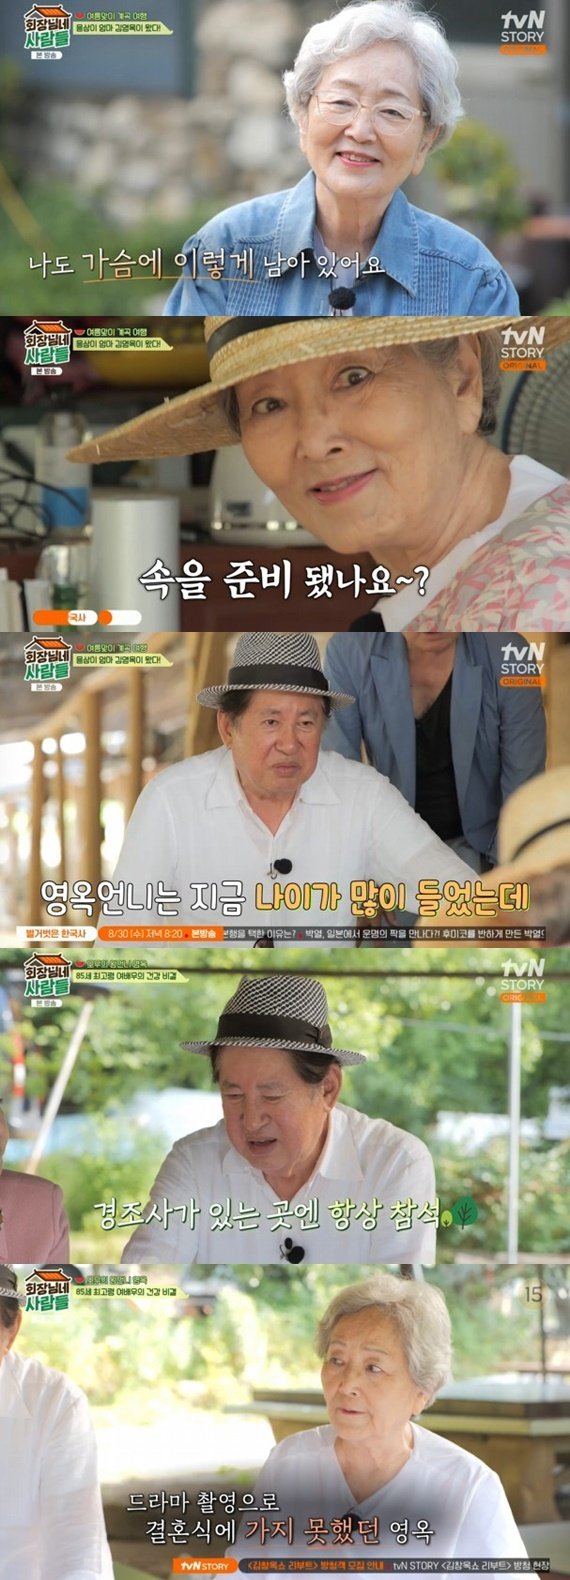 김영옥 "김용건 子 결혼식, '킹더랜드' 촬영으로 불참"